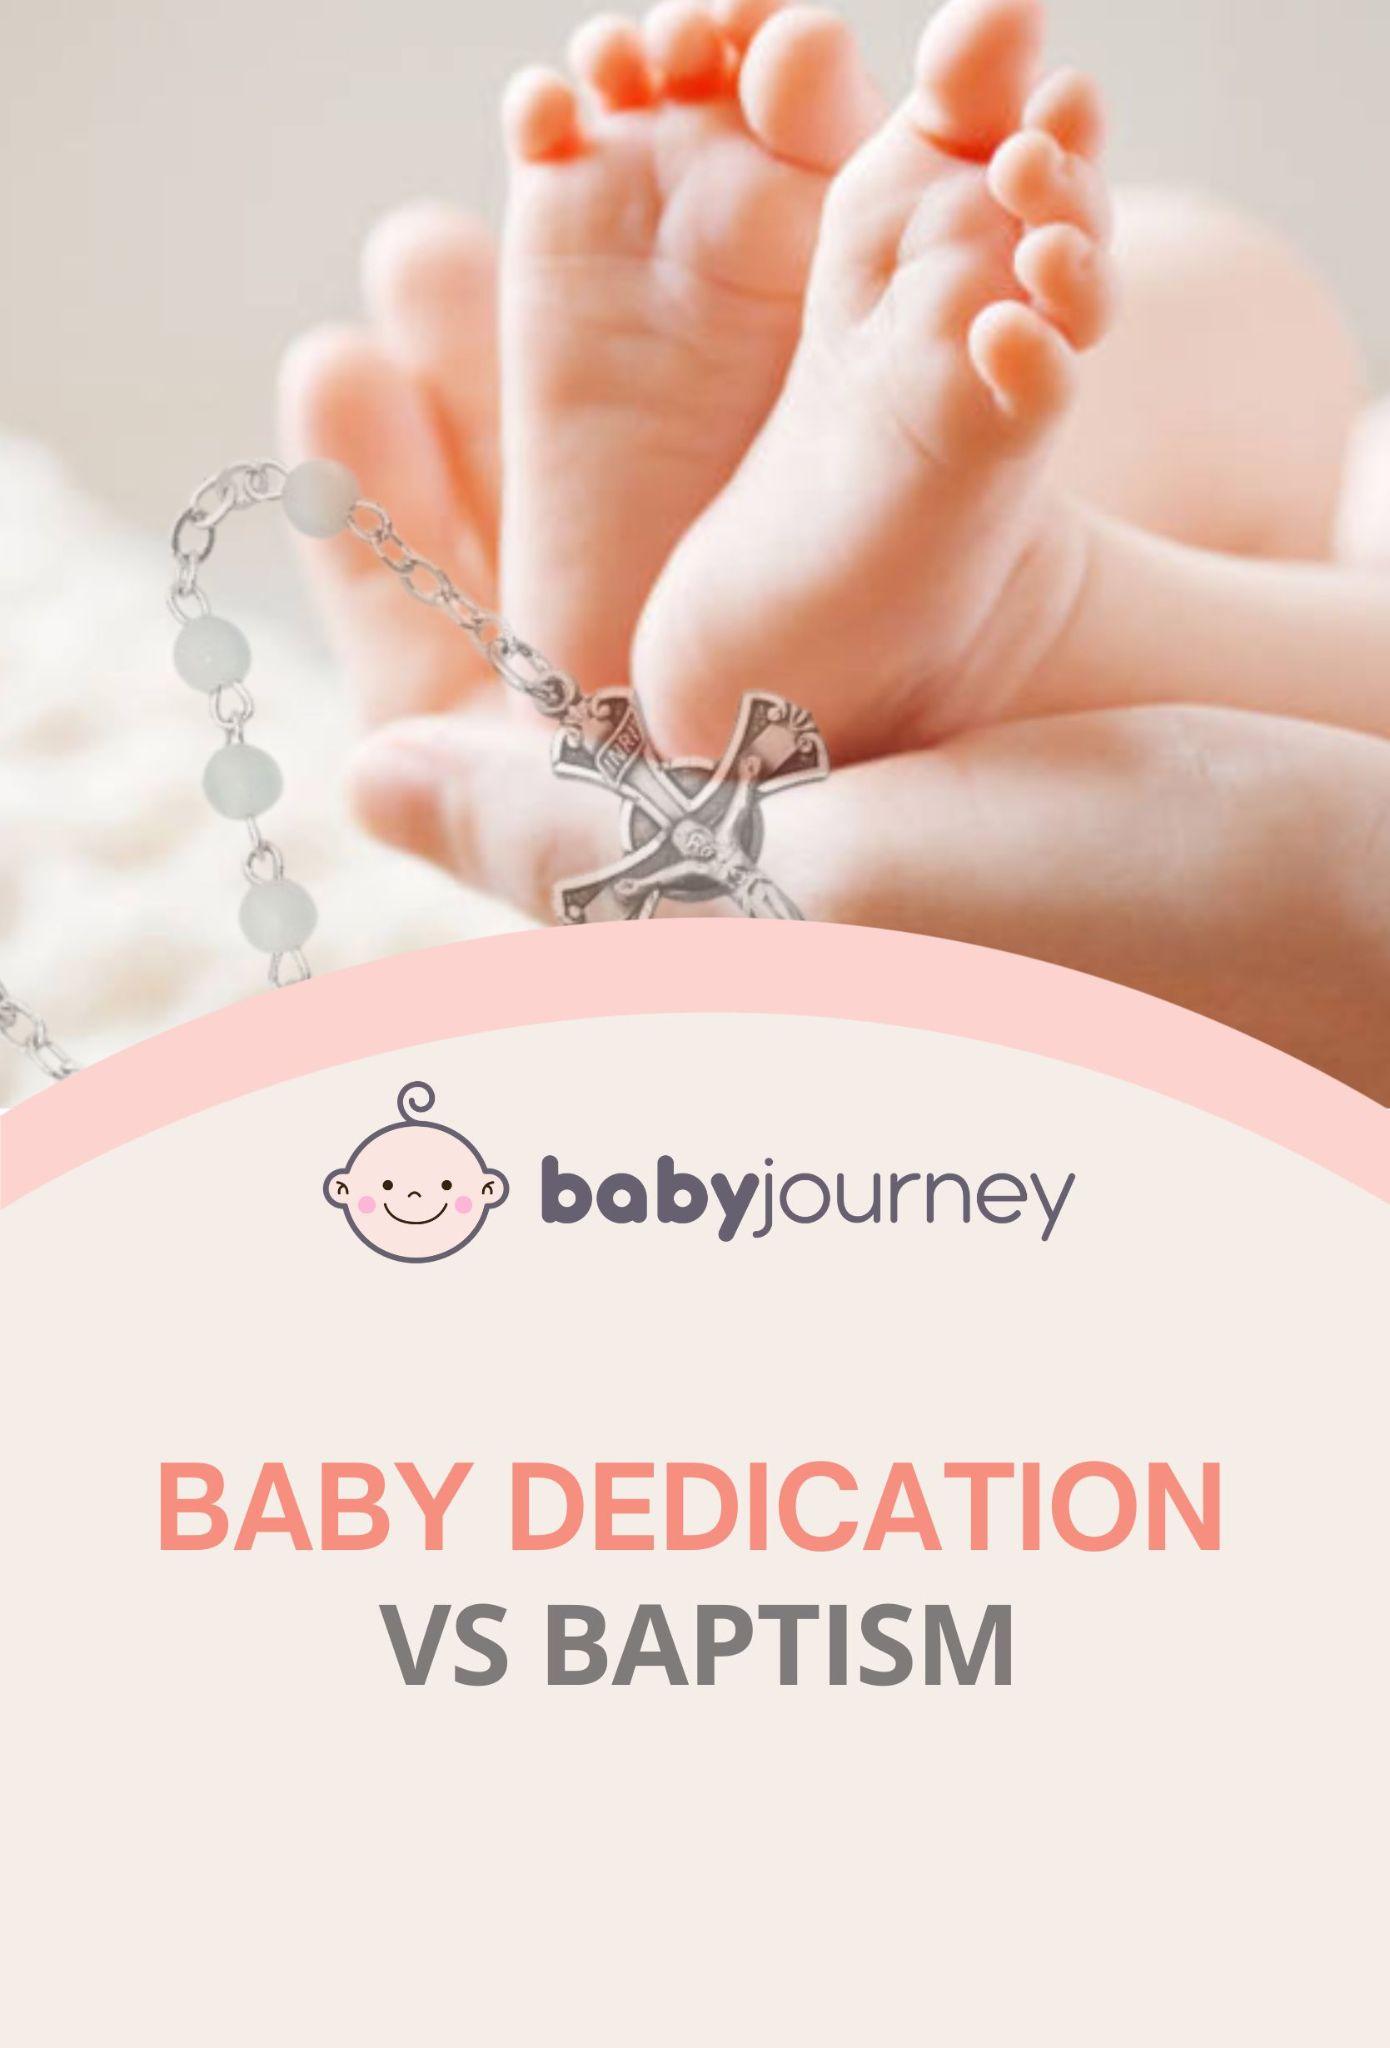 Baby dedication vs baptism pinterest - Baby Journey
